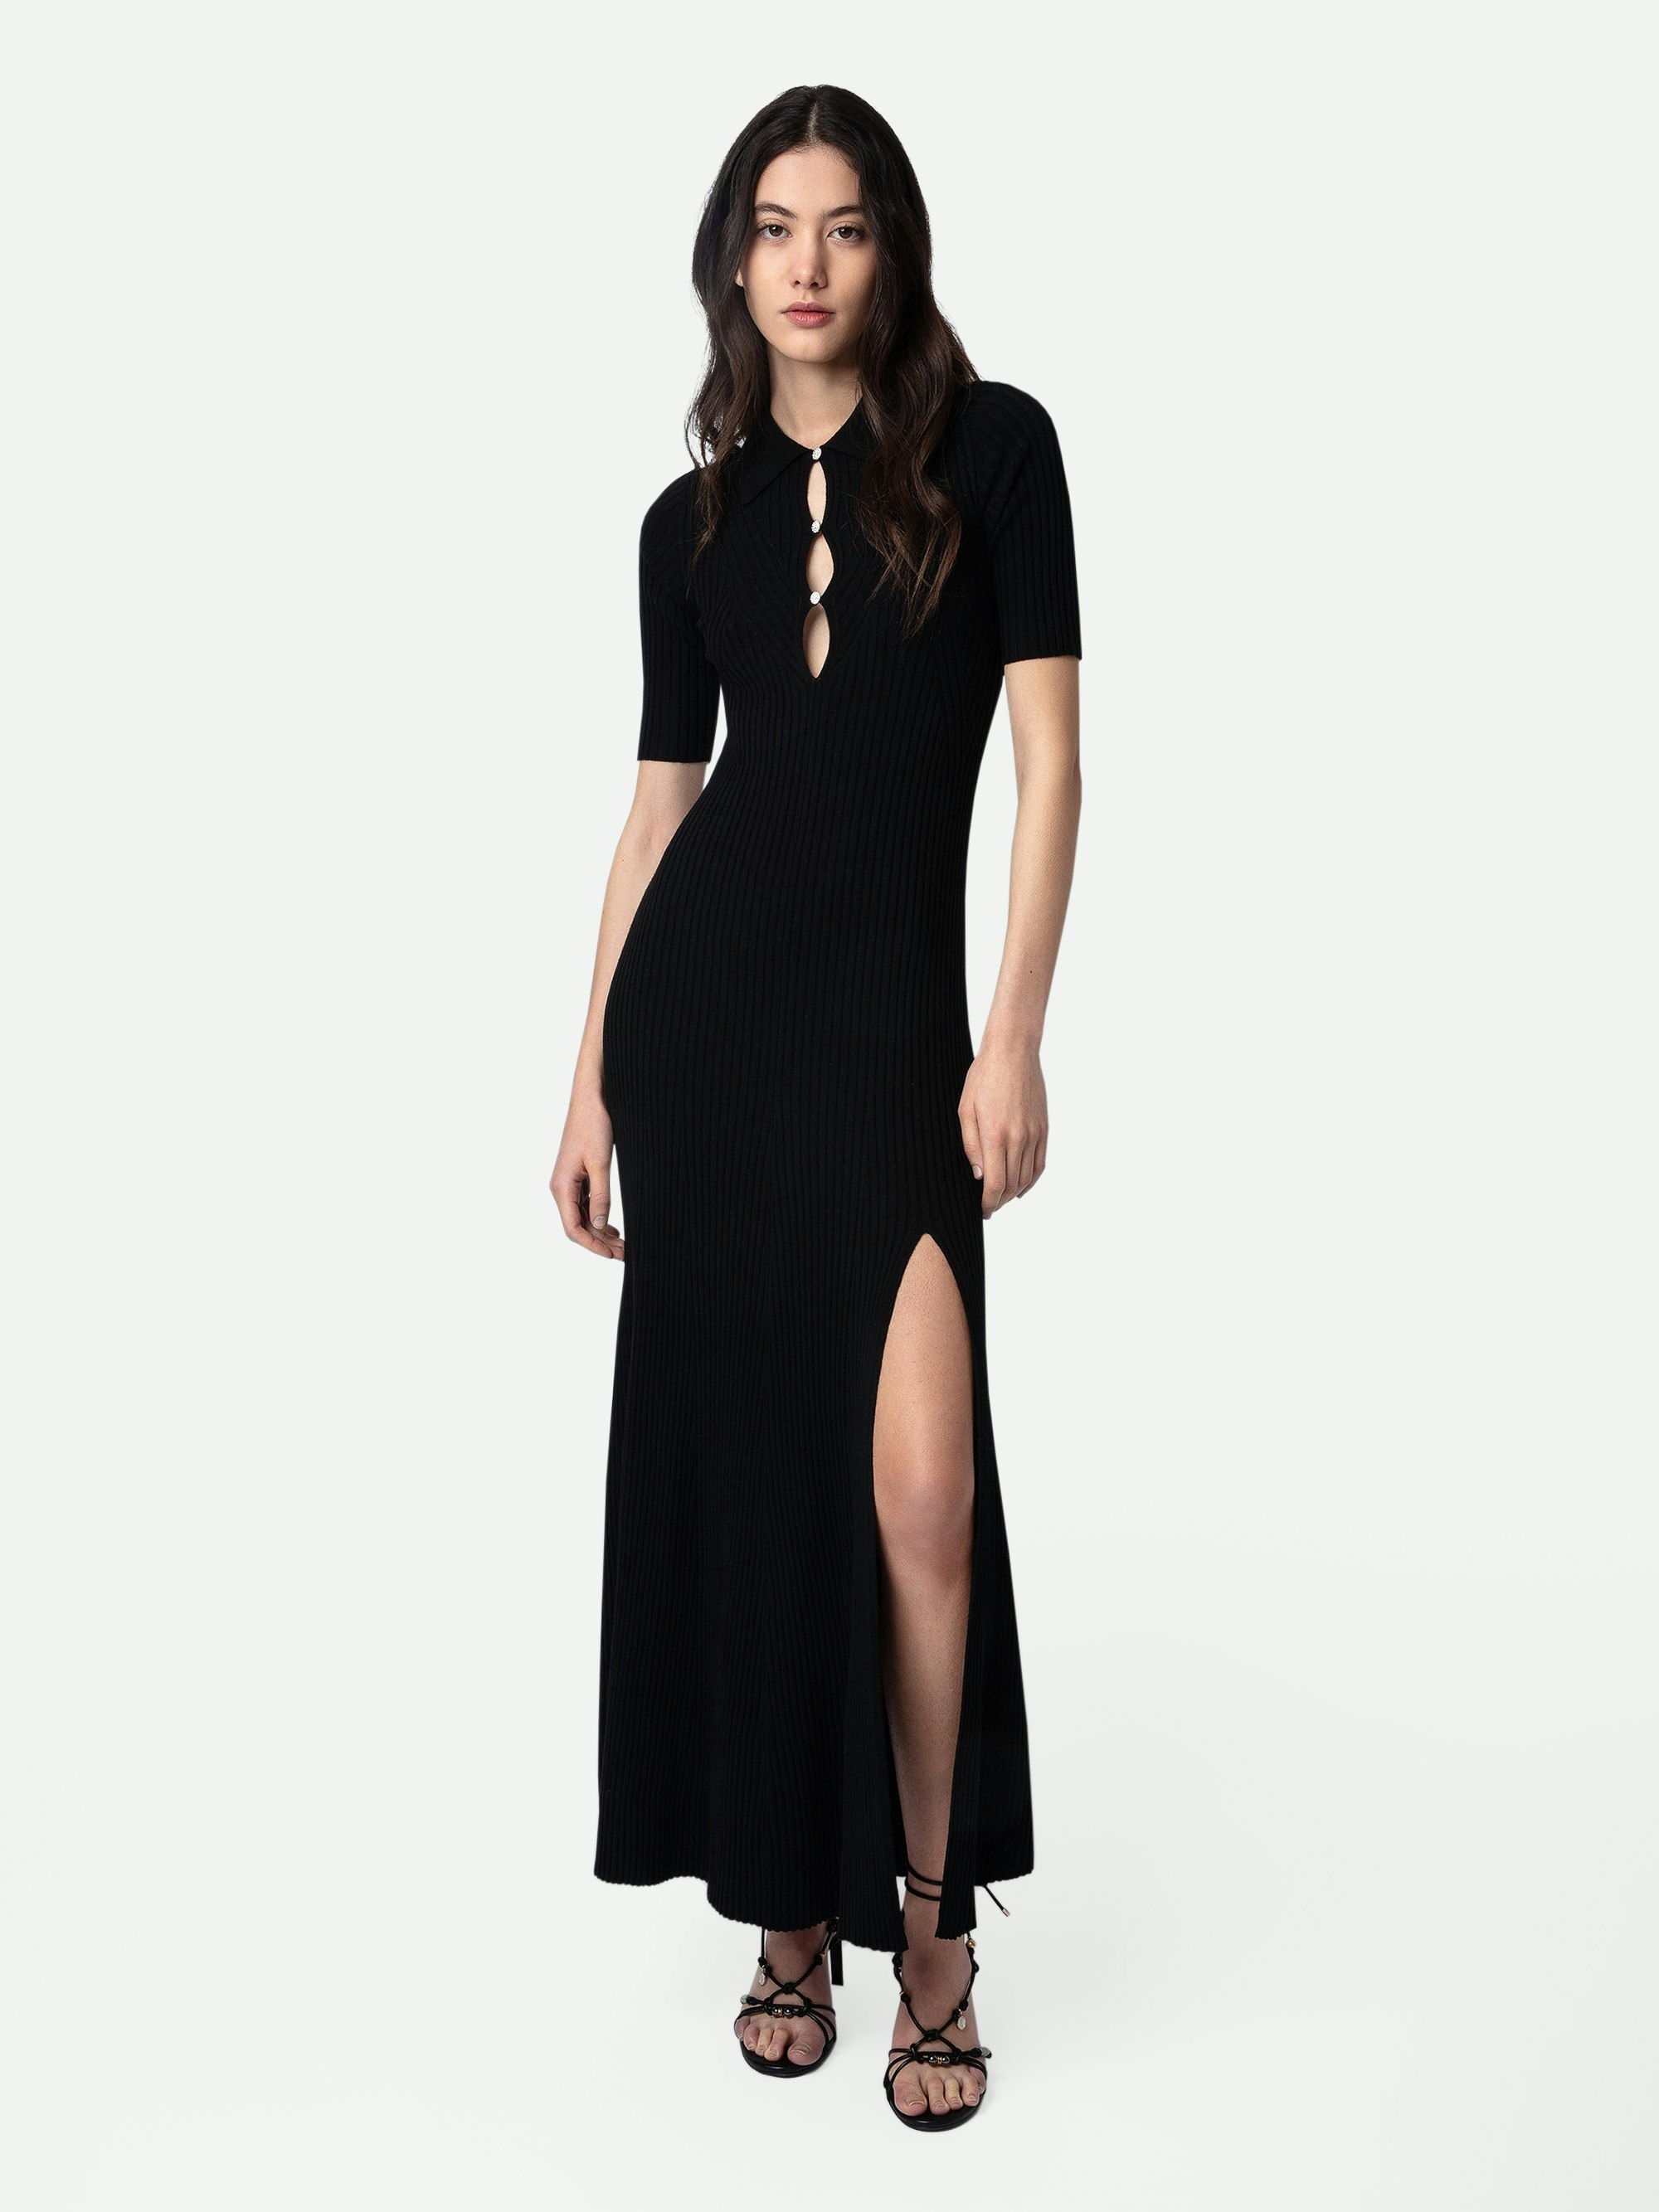 Vestido Lysa - Vestido negro, largo y abierto de lana merina con cuello de camisa, mangas cortas y botones de bisutería con strass.